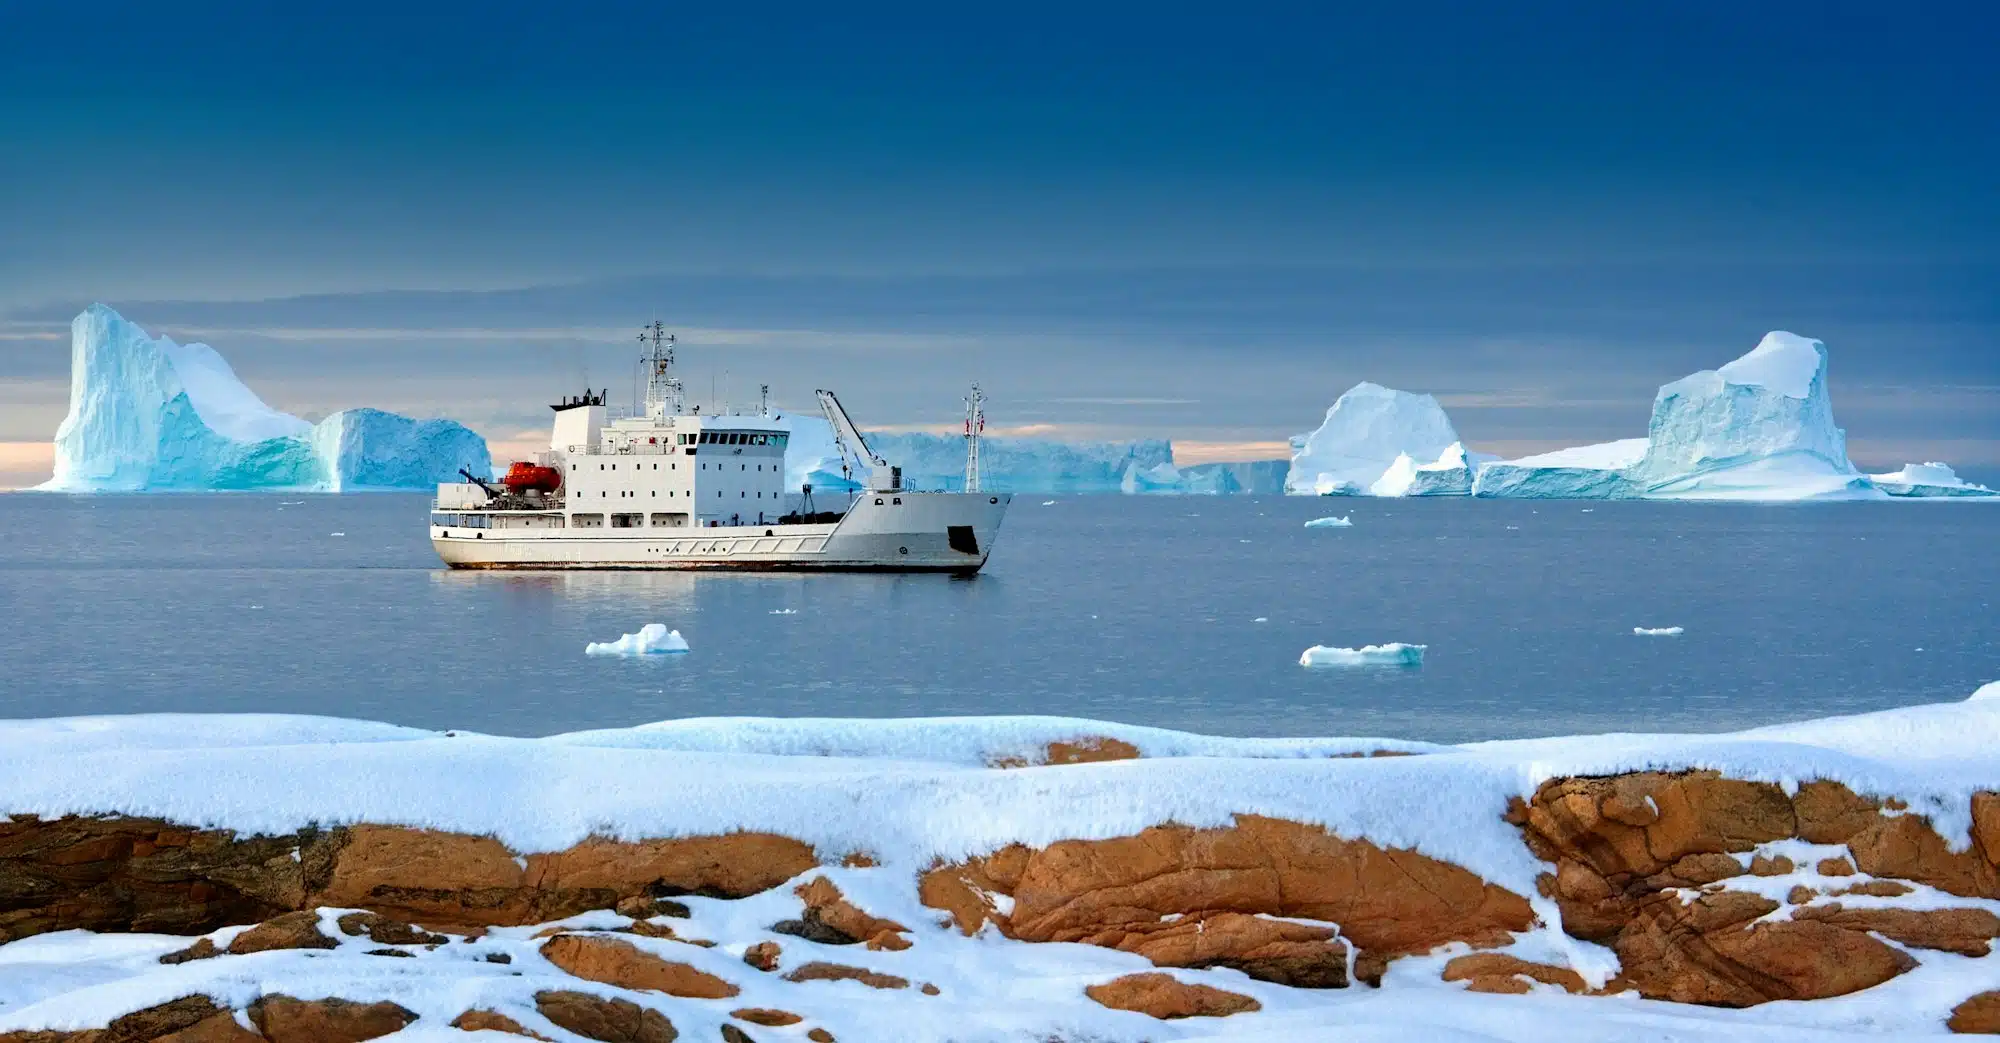 Svalbard-Inseln (Spitzbergen) in der hohen Arktis - Die Norwegische Regierung ergreift strengere Maßnahmen zum Schutz der arktischen Tierwelt und Natur auf den Spitzbergen